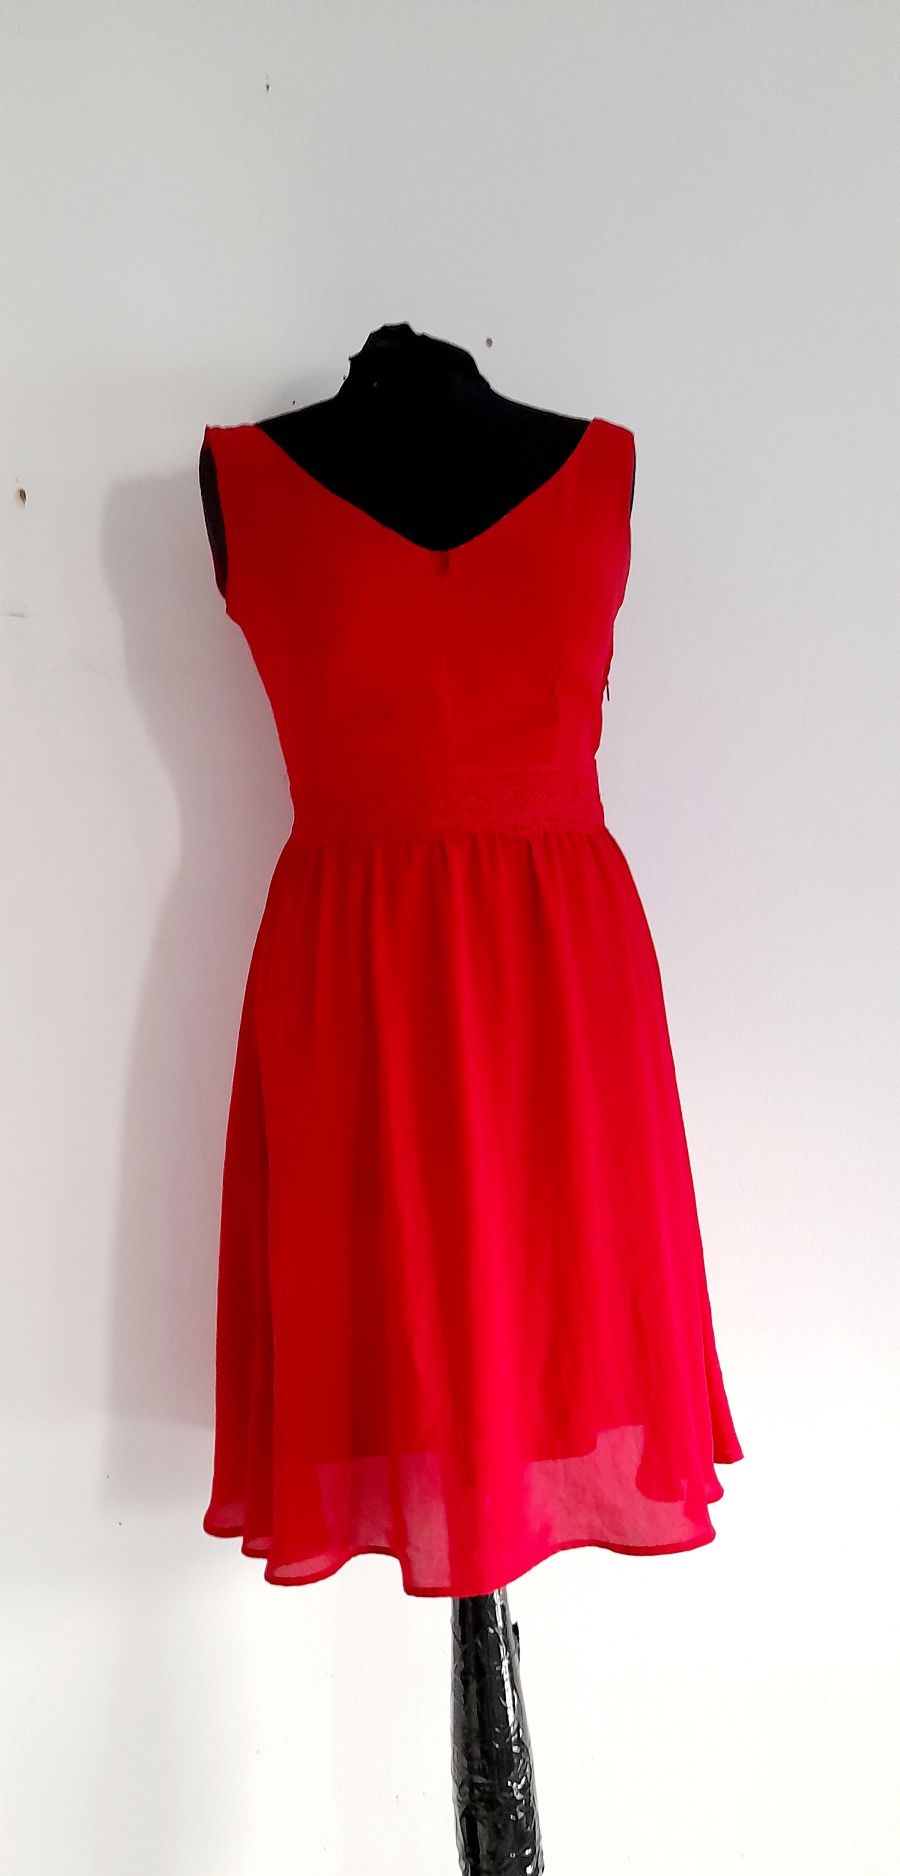 OKAZJA Orsay czerwona sukienka midi mini red dress 34 xs 36 s 32 xxs